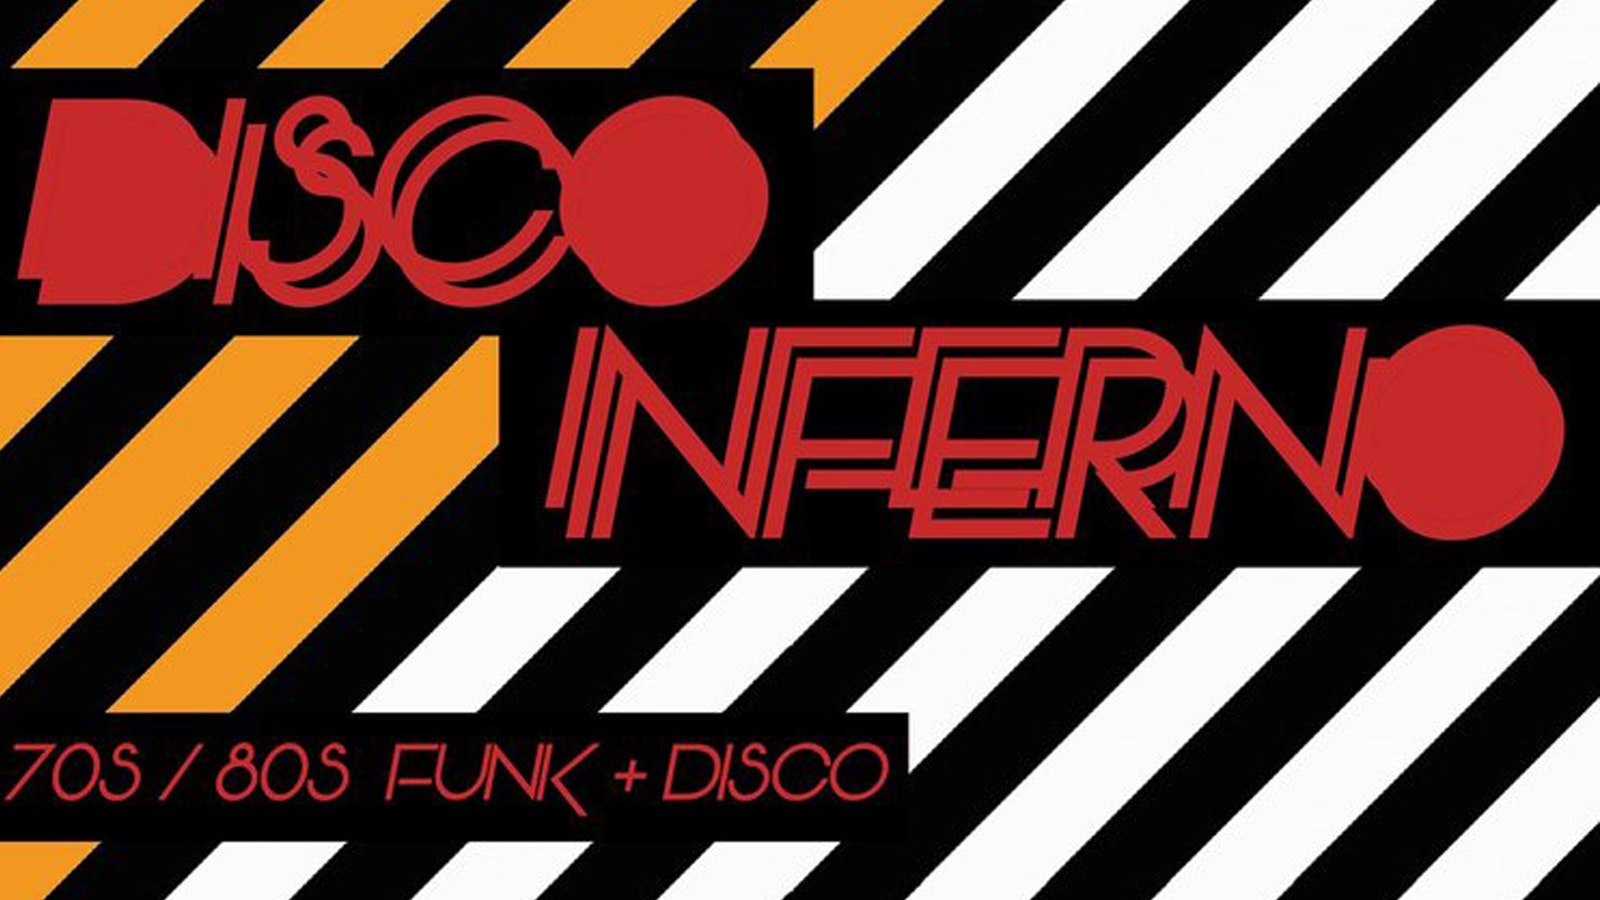 Disco Inferno // 70s 80s Funk & Disco